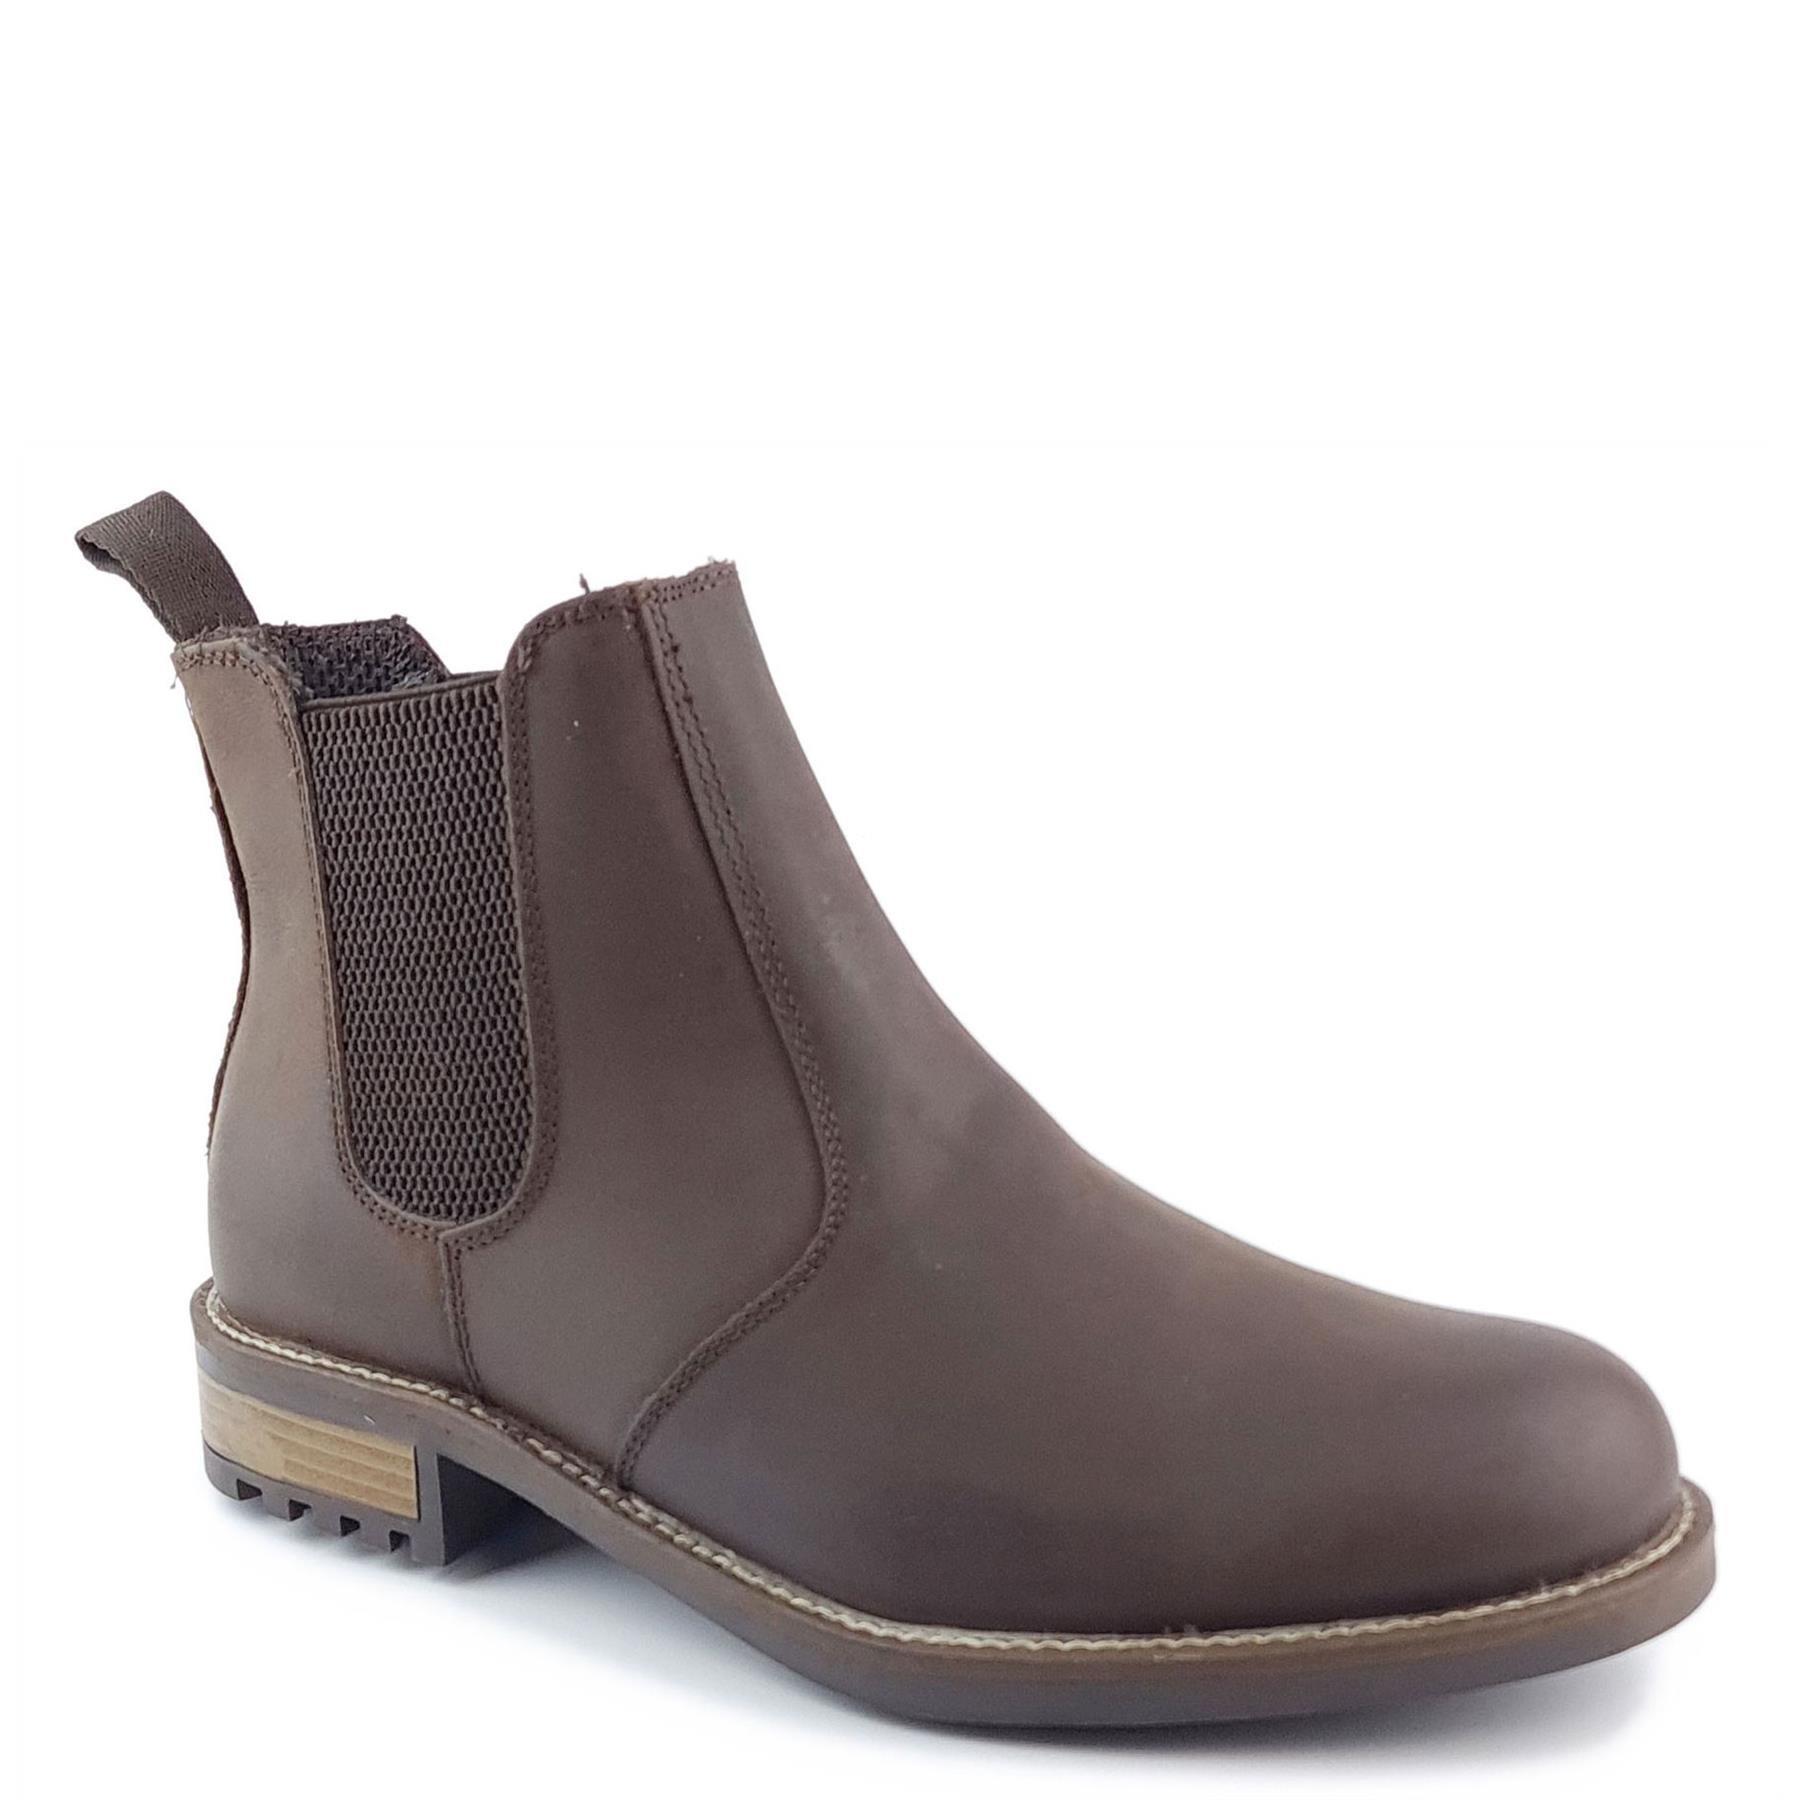 Кожаные ботинки челси Loddington Frank James, коричневый ботинки мужские wrangler boogie mid fur s wm22100 064 зимние коричневые 40